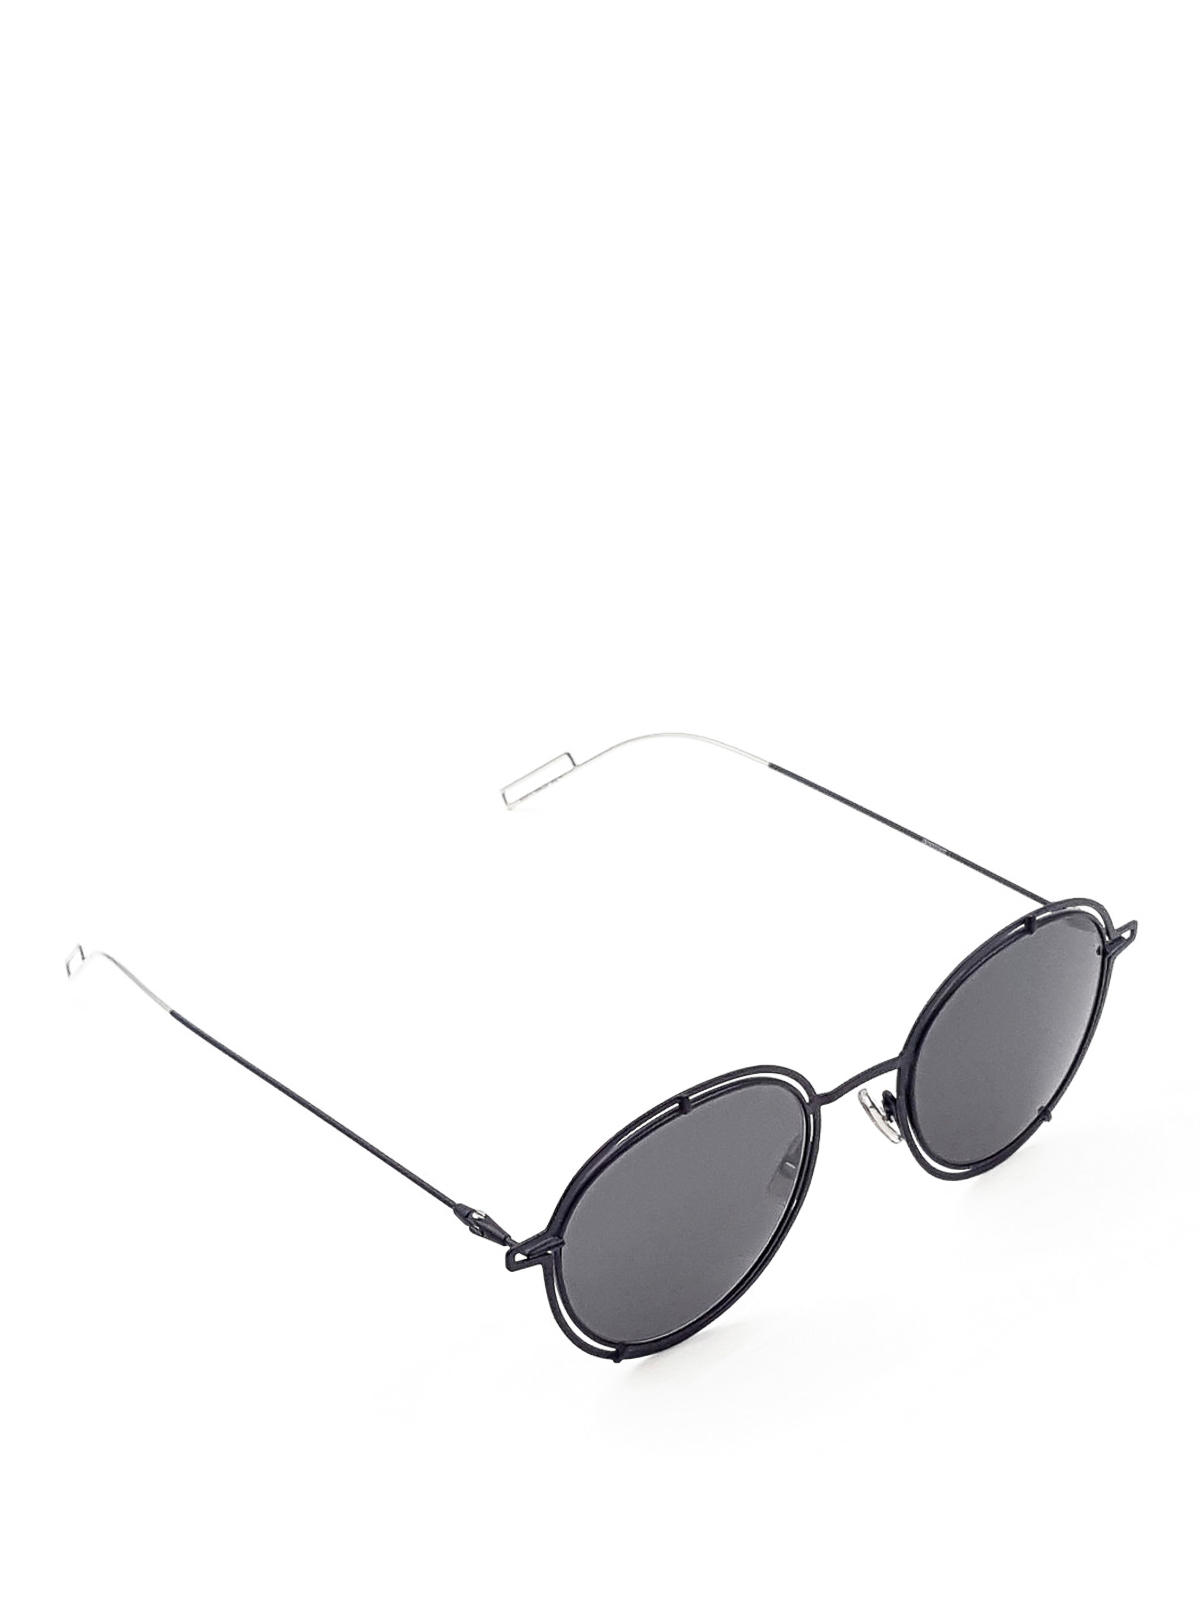 dior sunglasses round